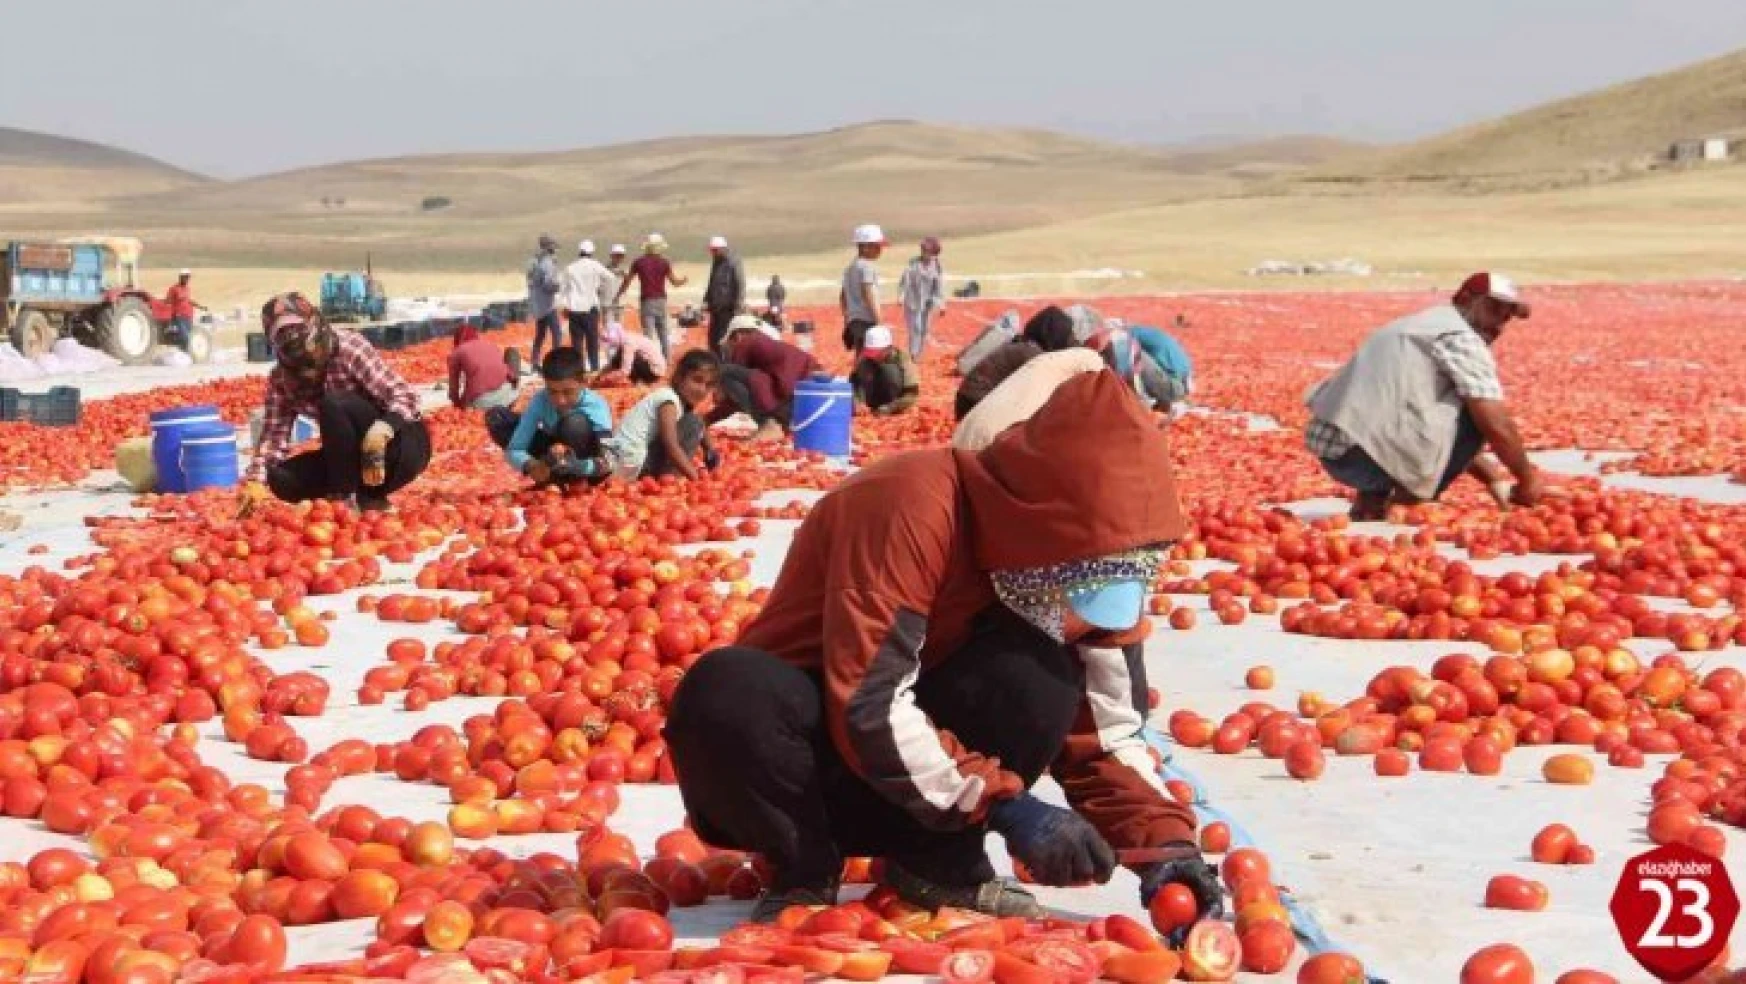 Elazığ'da 20 bin dekar alanda domates hasadı sürüyor